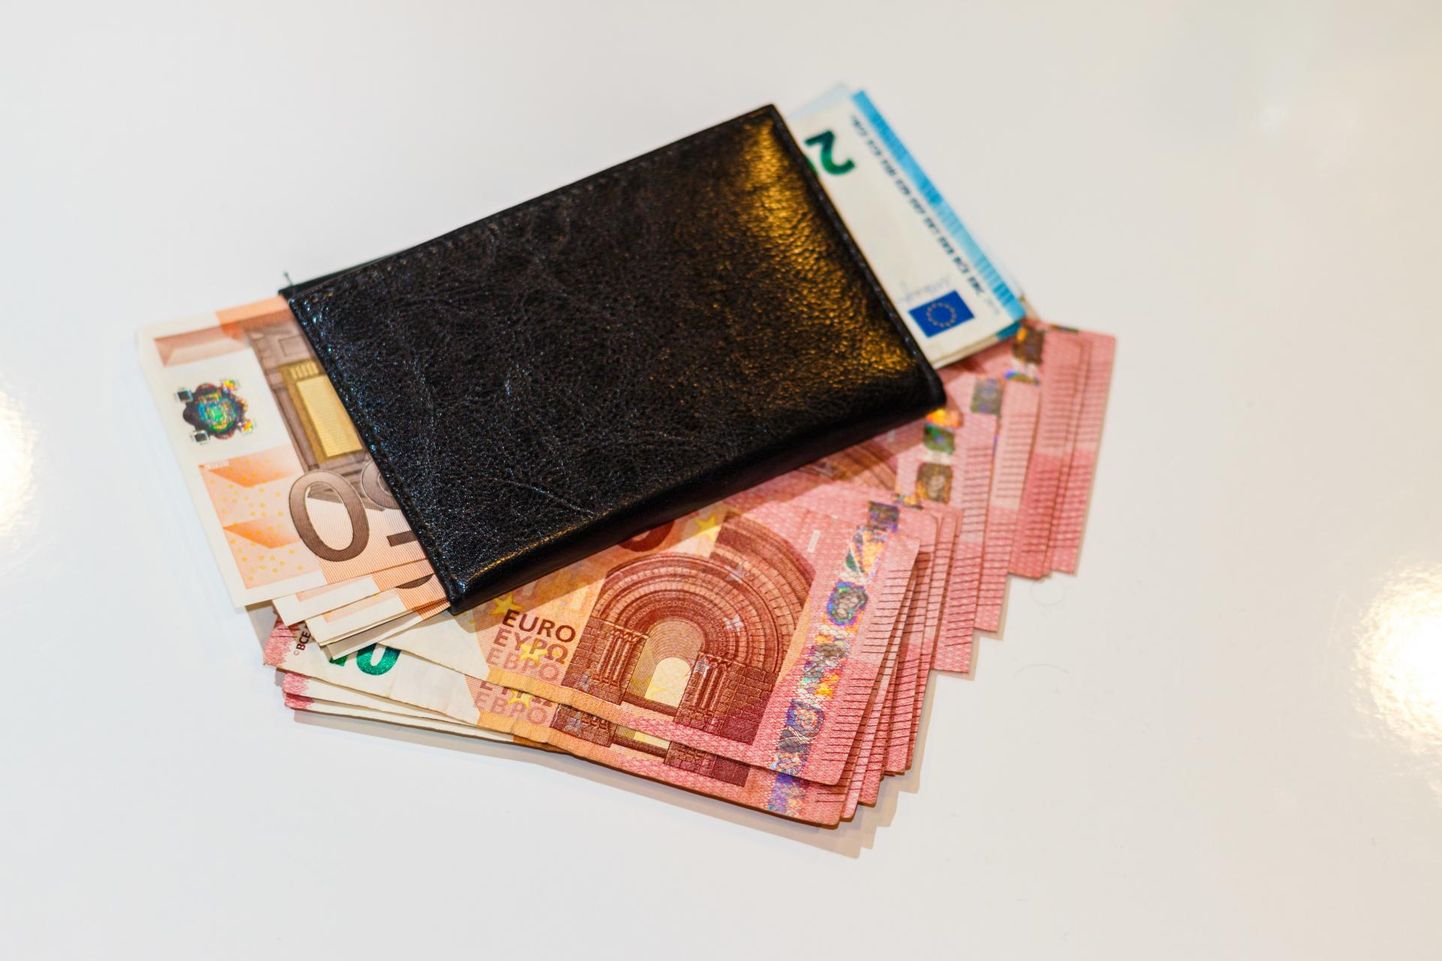 Tänavalt leitud 3400 eurot leidsid tänu ausale leidjale omaniku.